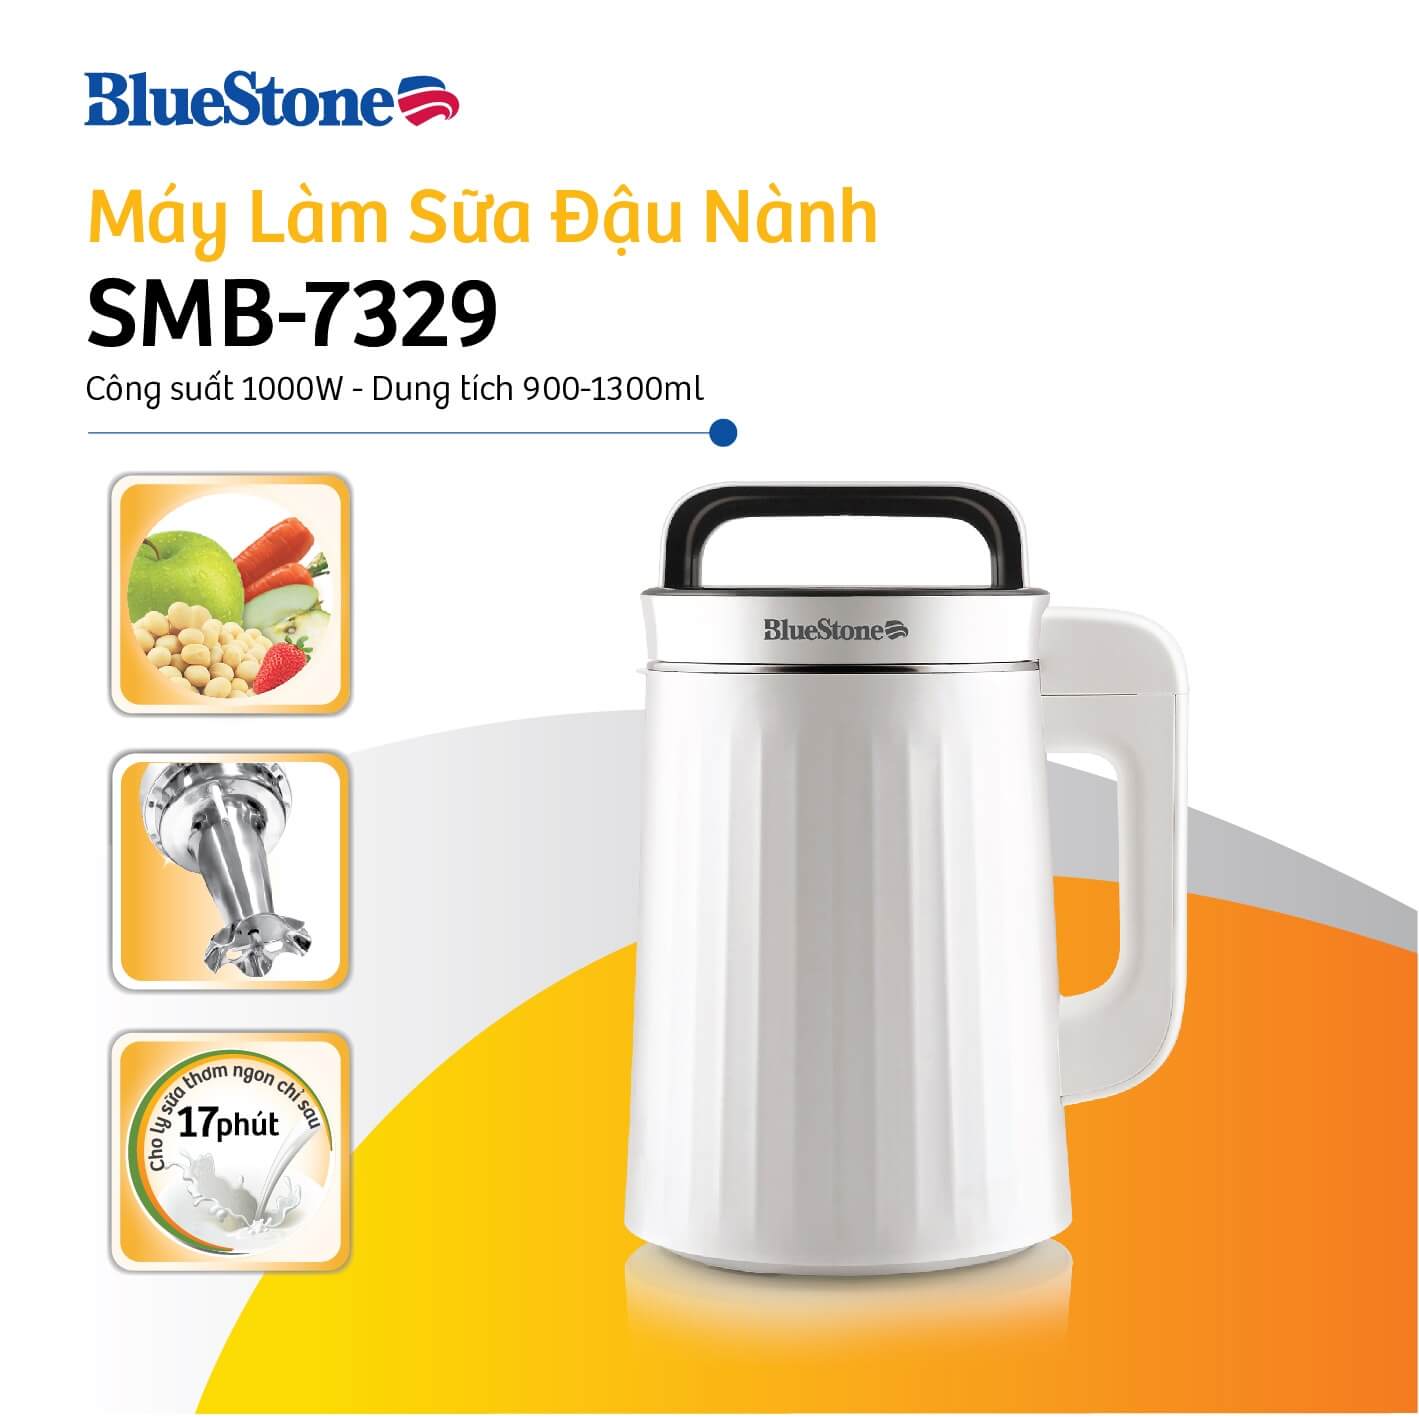 Máy Làm Sữa Hạt Đa Năng Bluestone SMB-7329 (1.3 Lít) - Hàng Chính Hãng